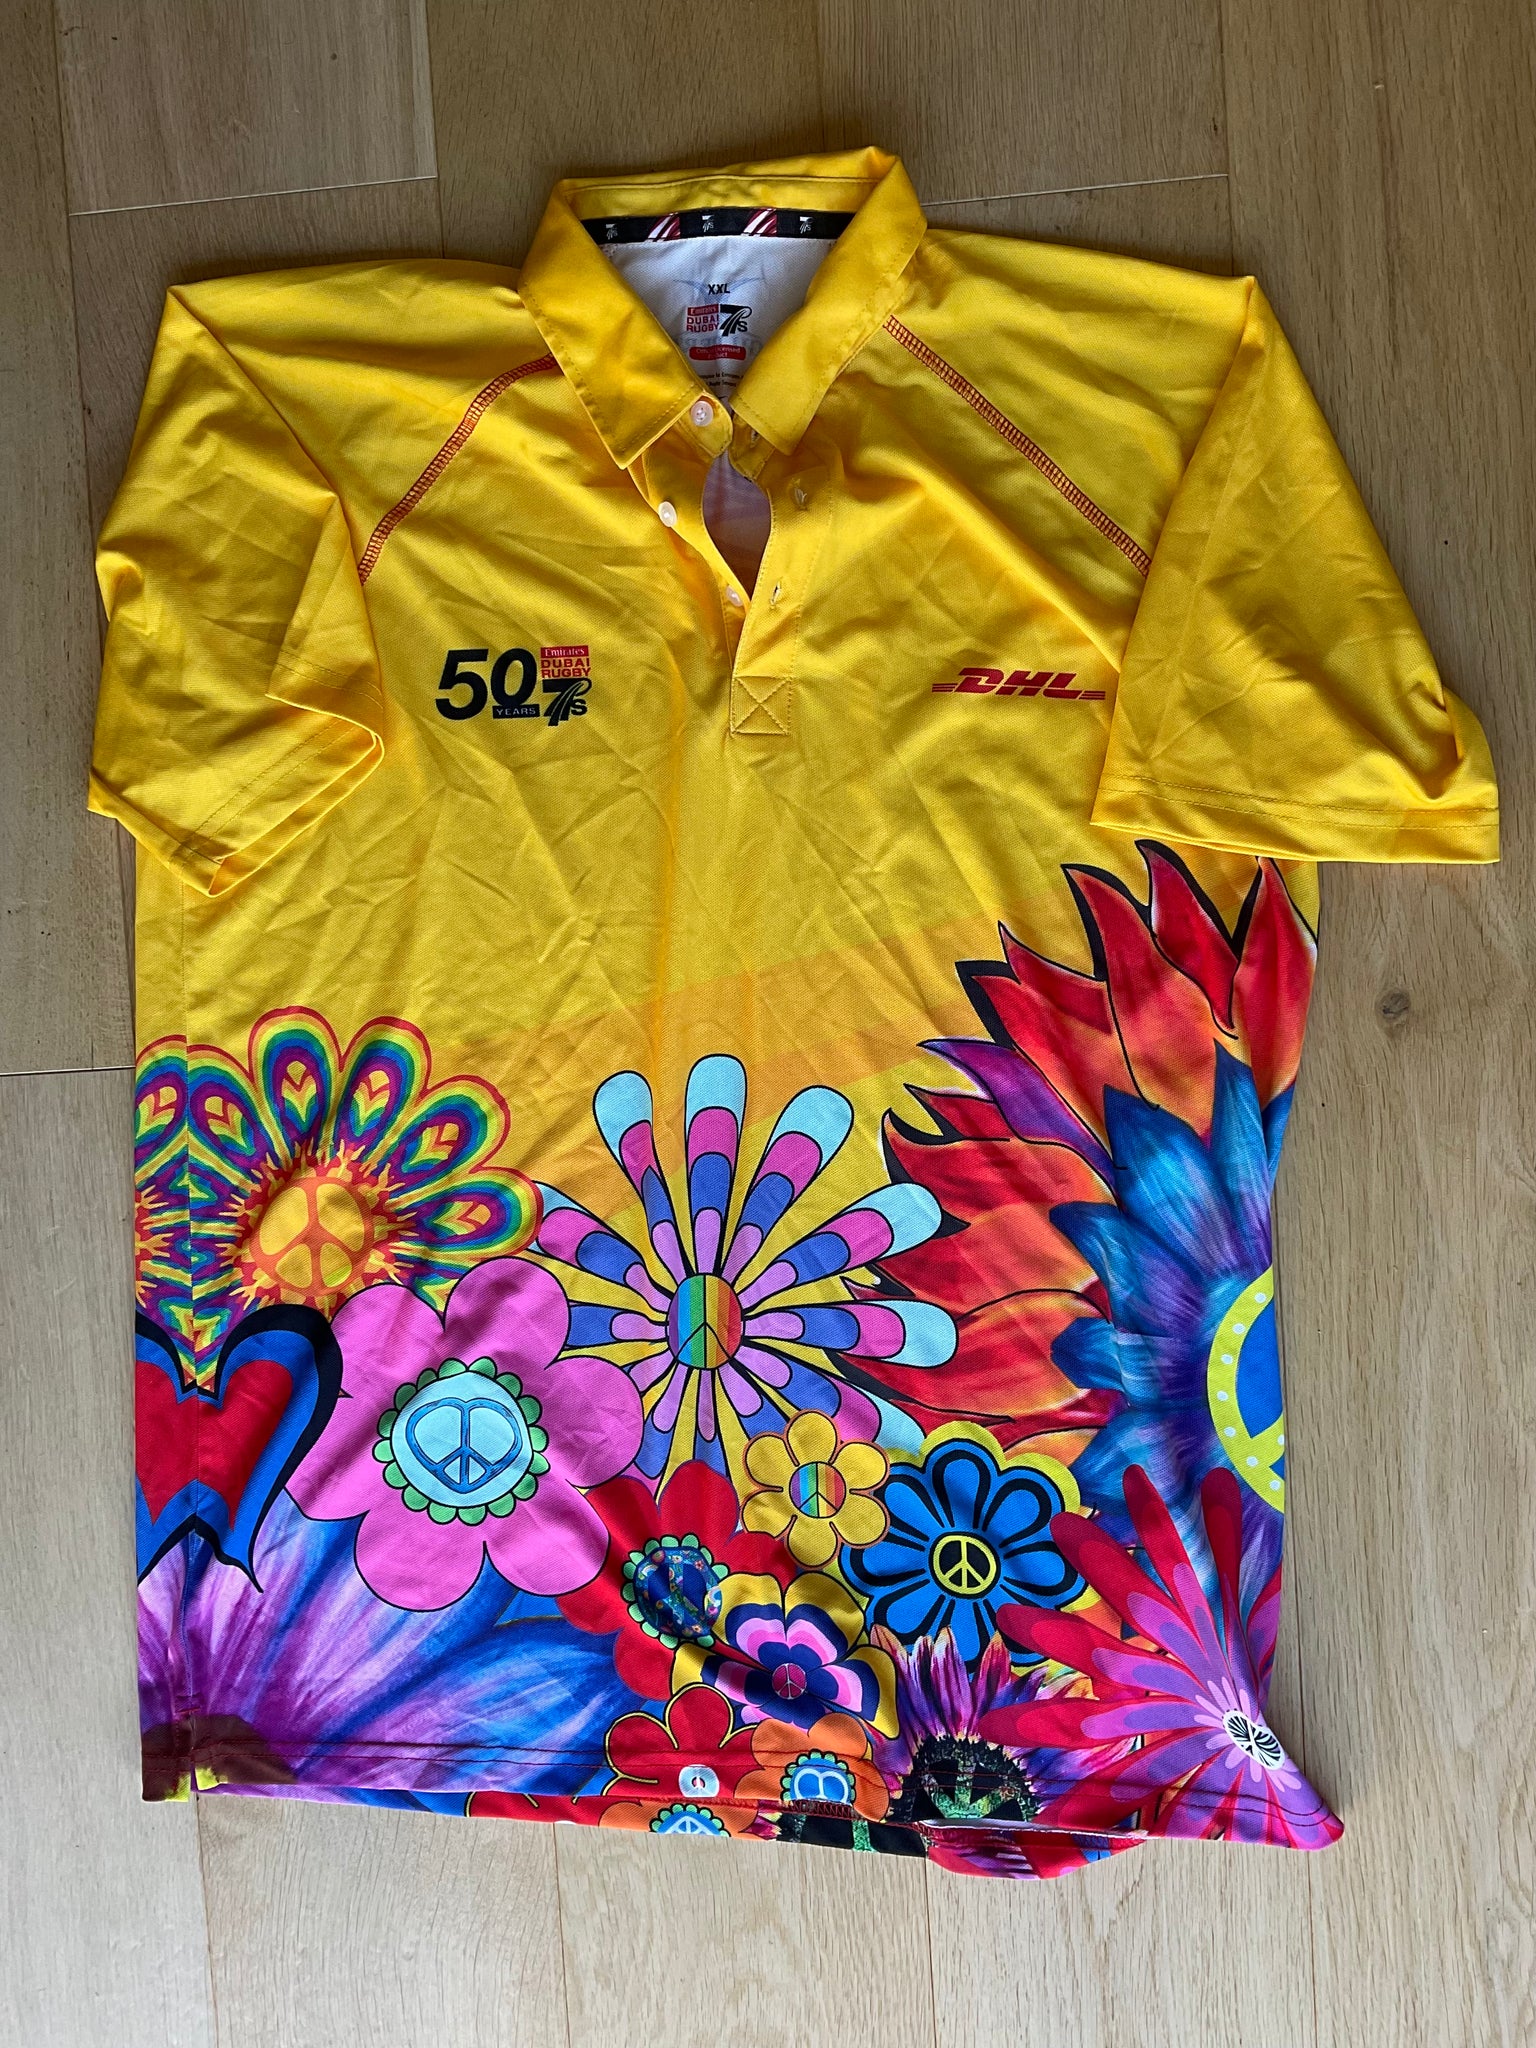 Simon Shaw - DHL Dubai 7’s Polo Shirt [Yellow & Multicoloured]